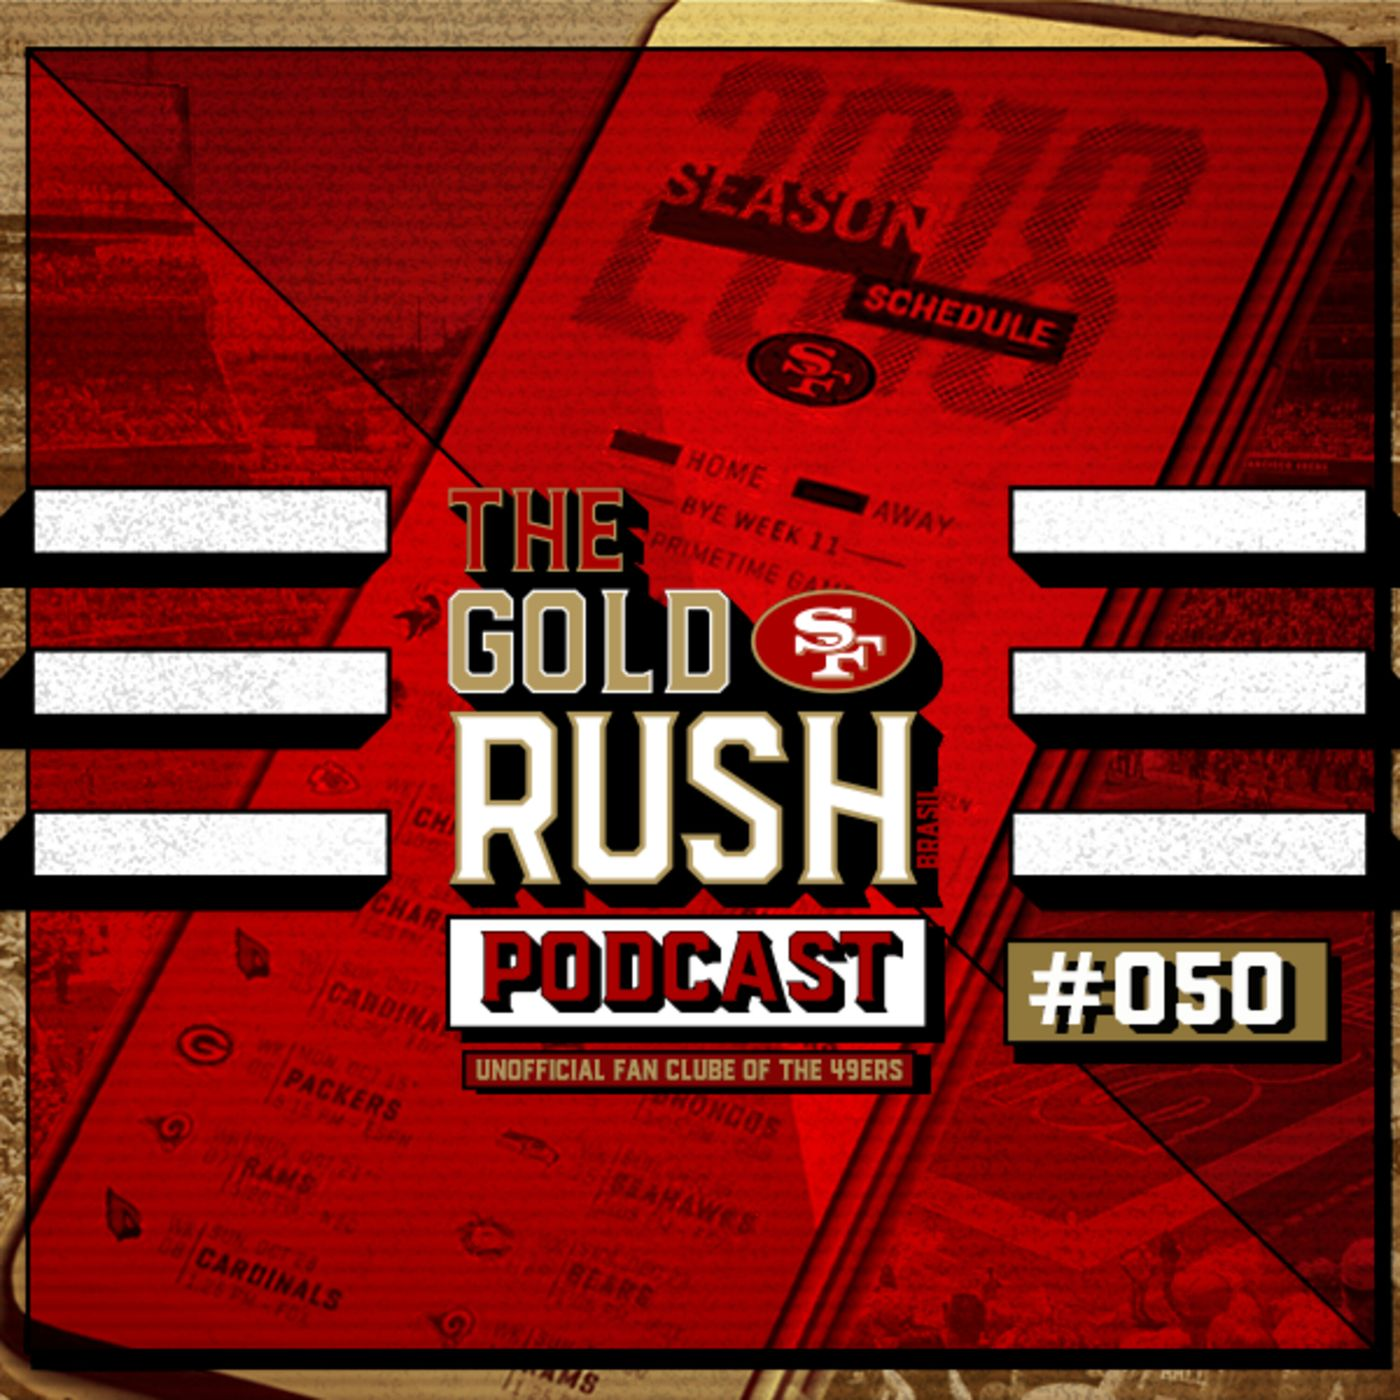 The Gold Rush Brasil Podcast 050 – Calendário 49ers 2018